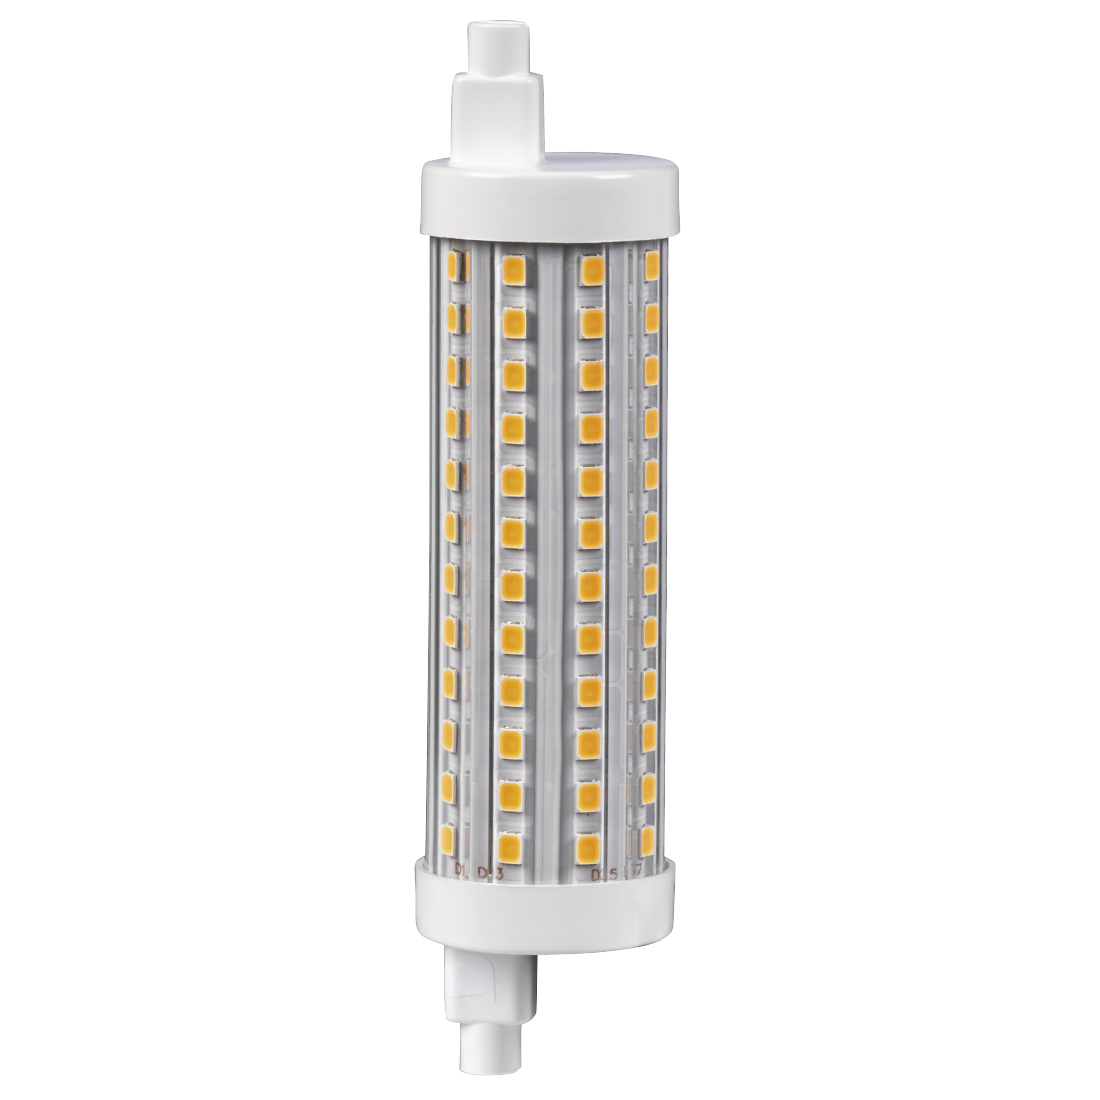 abx2 Druckfähige Abbildung 2 - Xavax, LED-Lampe, R7s, 2000lm ersetzt 125W, Stablampe, Warmweiß, dimmbar